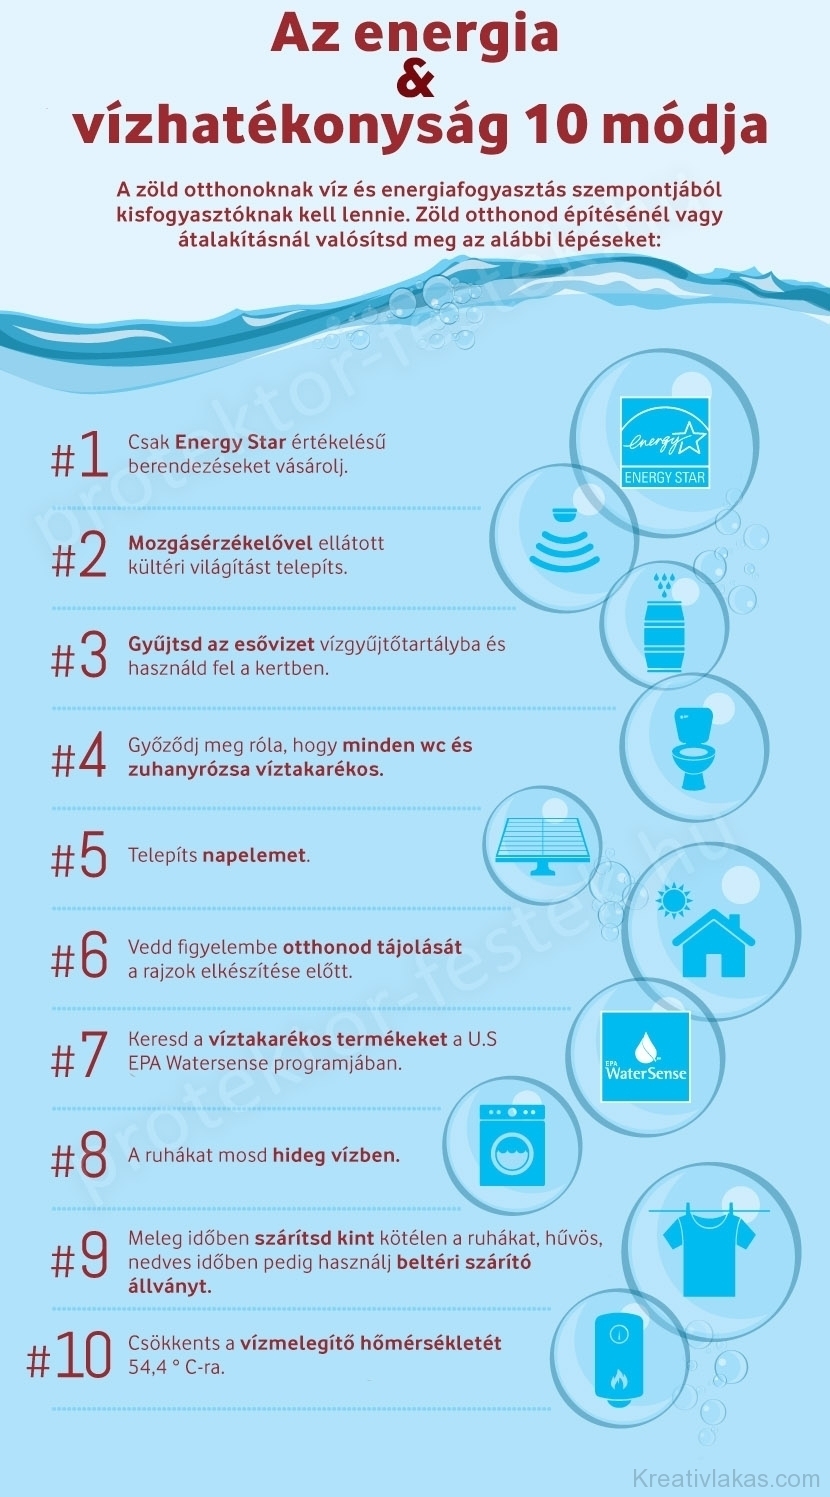 Az energia & vízhatékonyság 10 módja